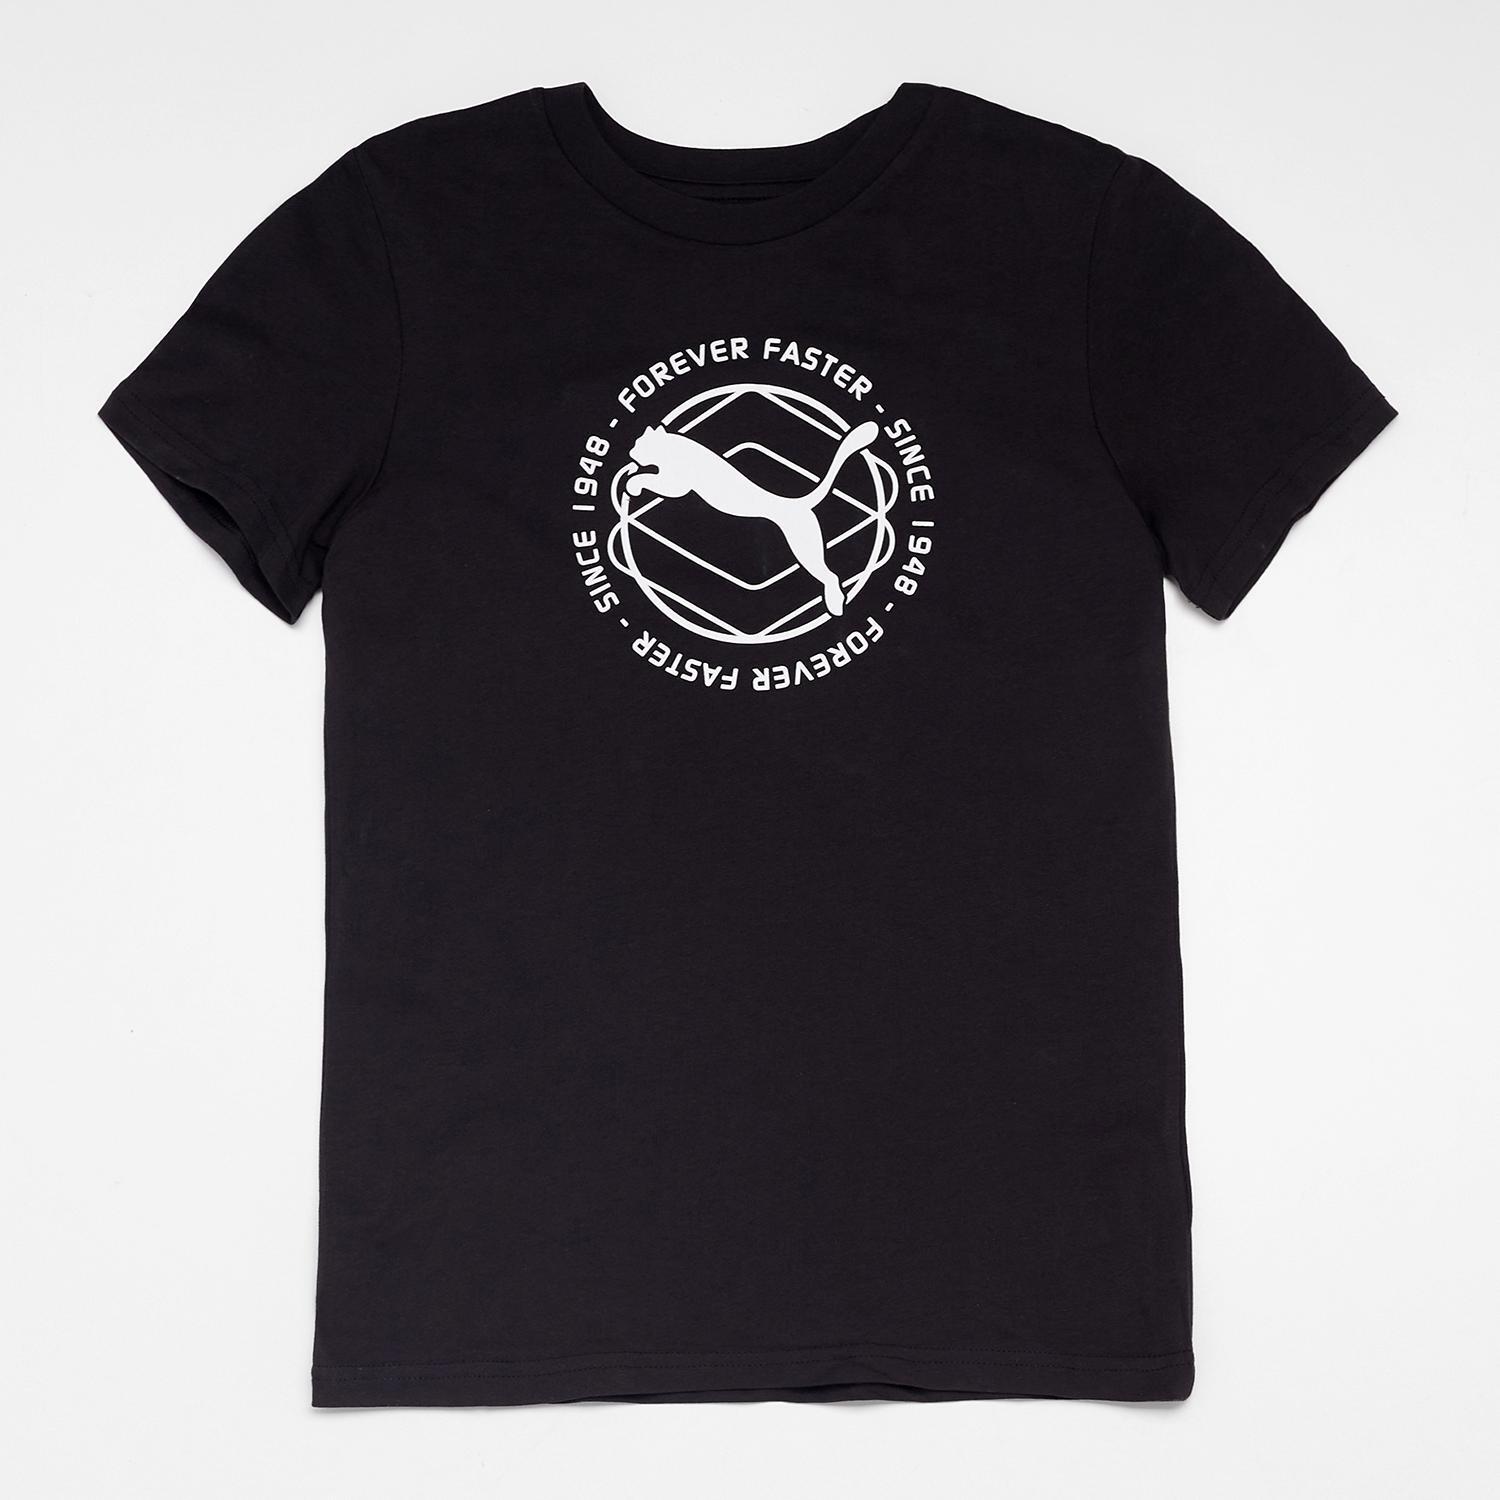 Puma T-shirt Zwart T-shirt Jongens